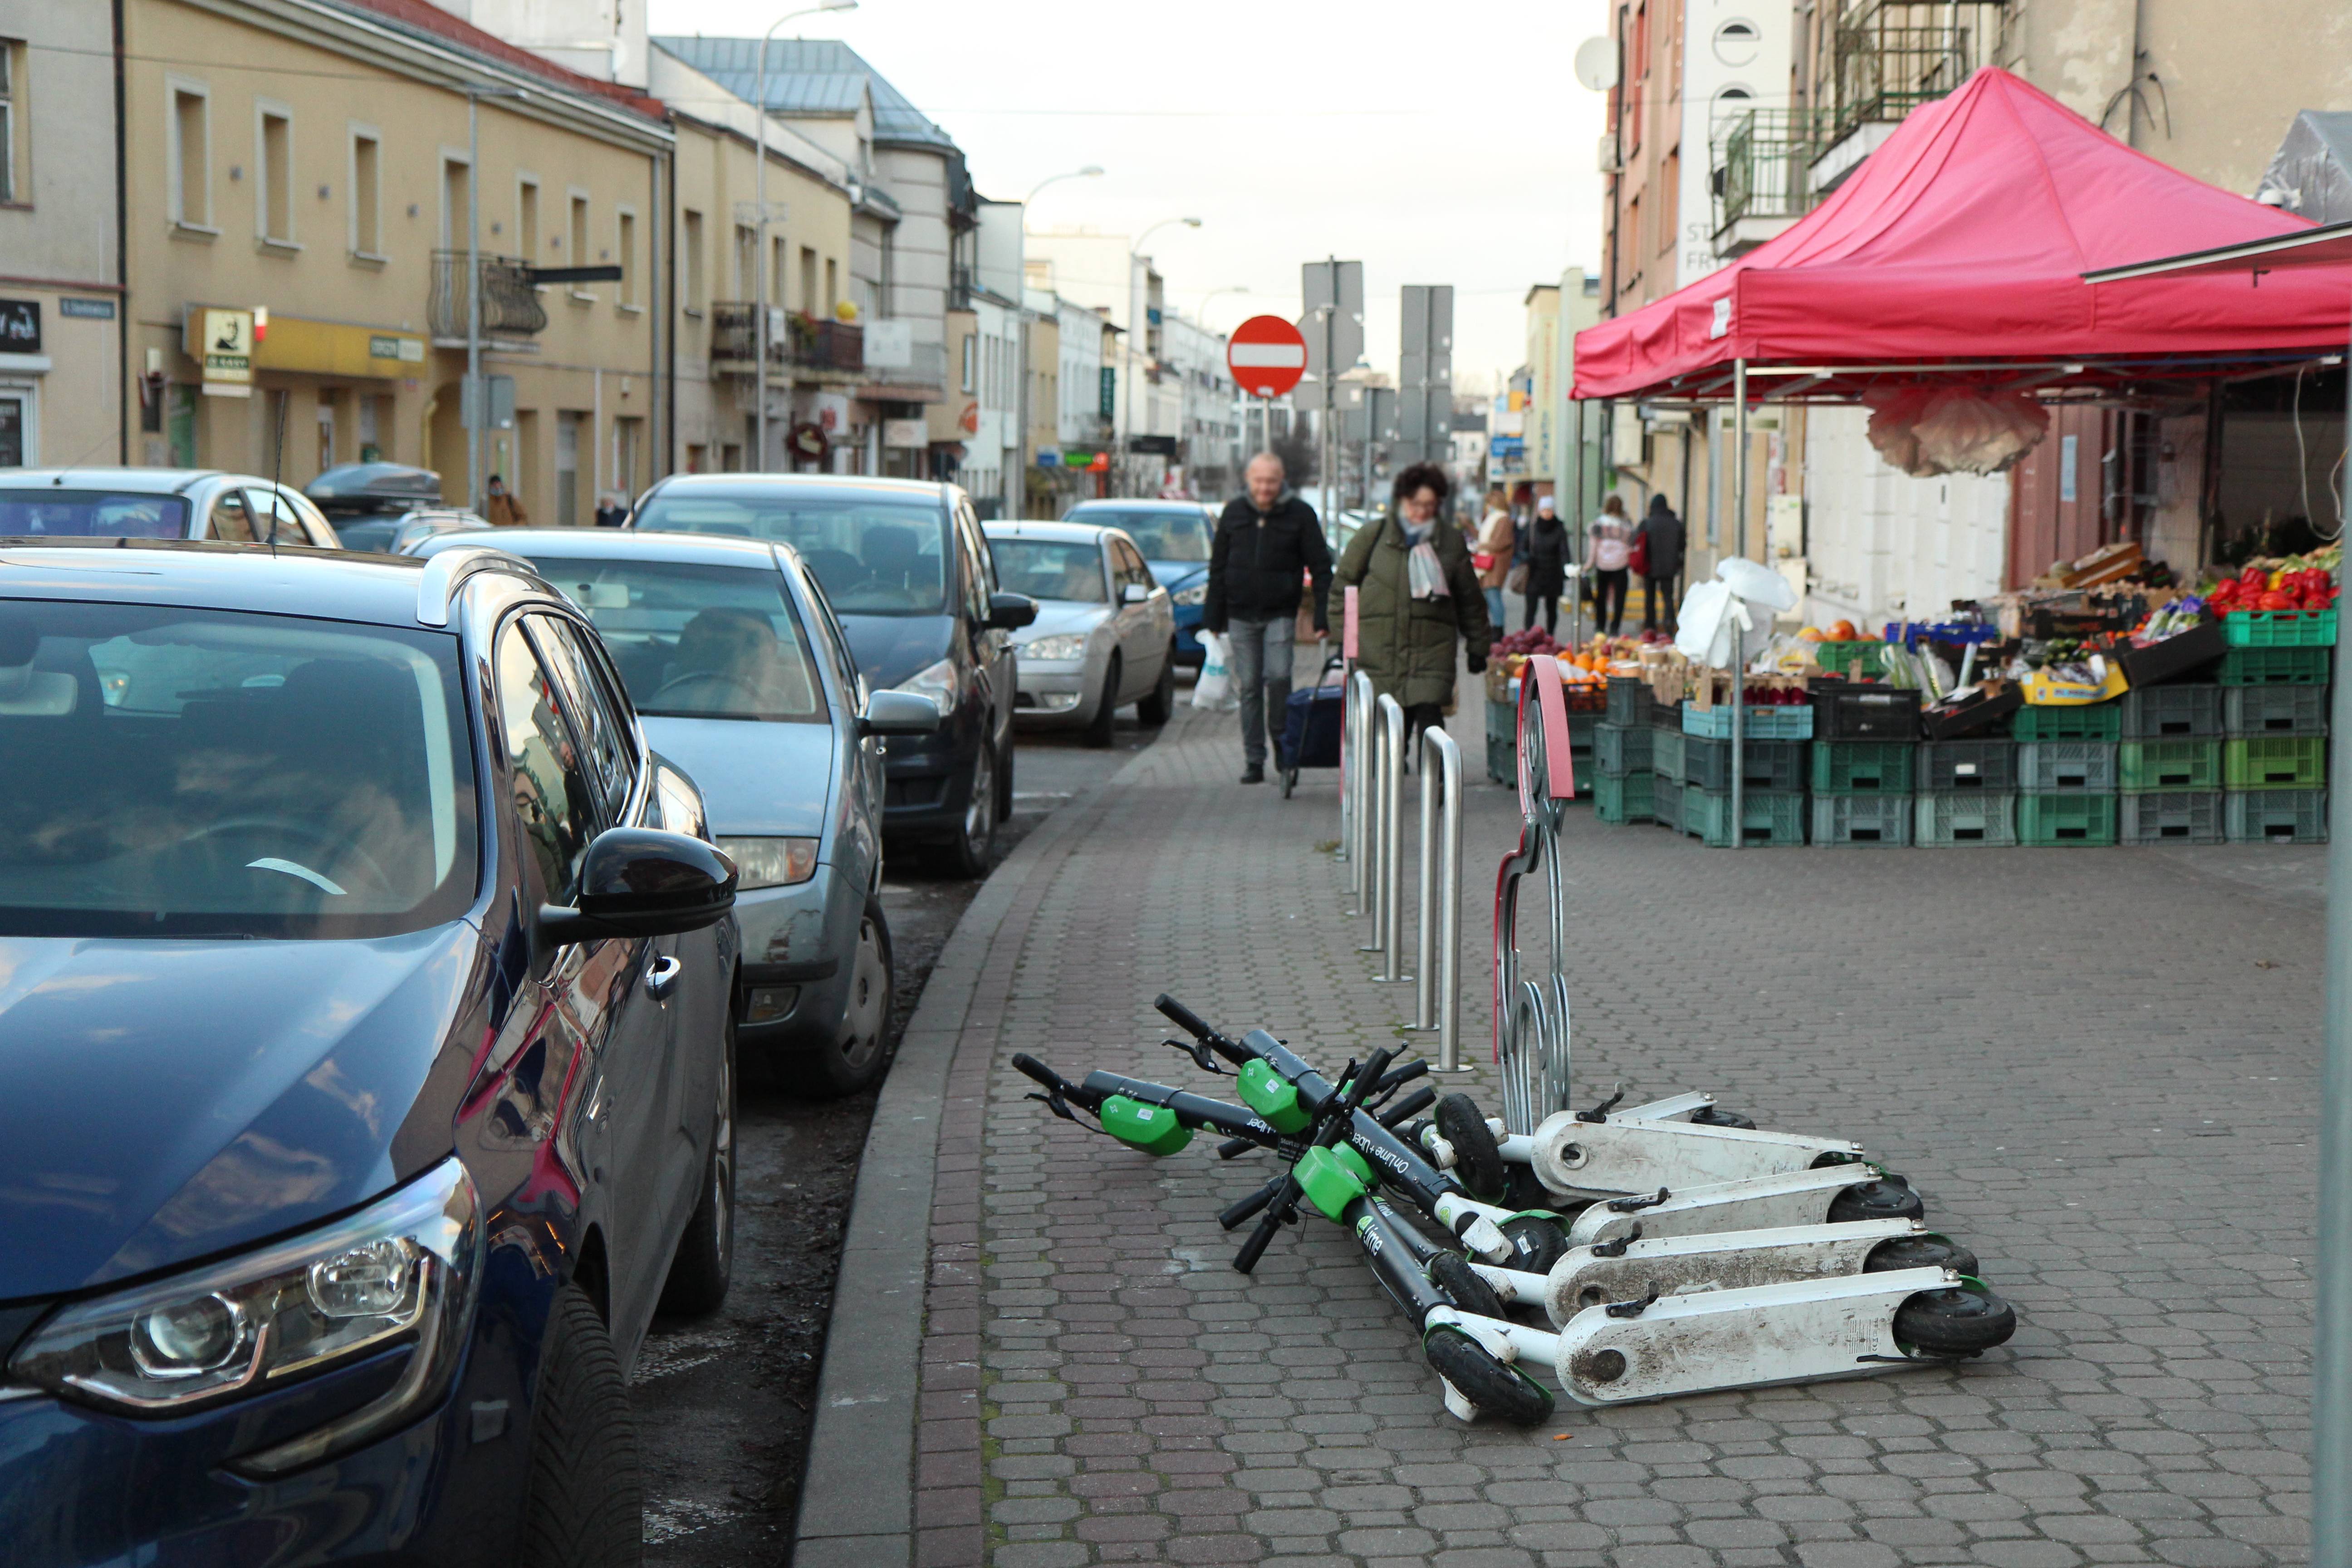 Patrzymy w przyszłość – zmieniamy centrum miasta. Na zdjęciu ulica Kościuszki z rozłożonym straganem, przewróconymi hulajnogami i zaparkowanymi samochodami.